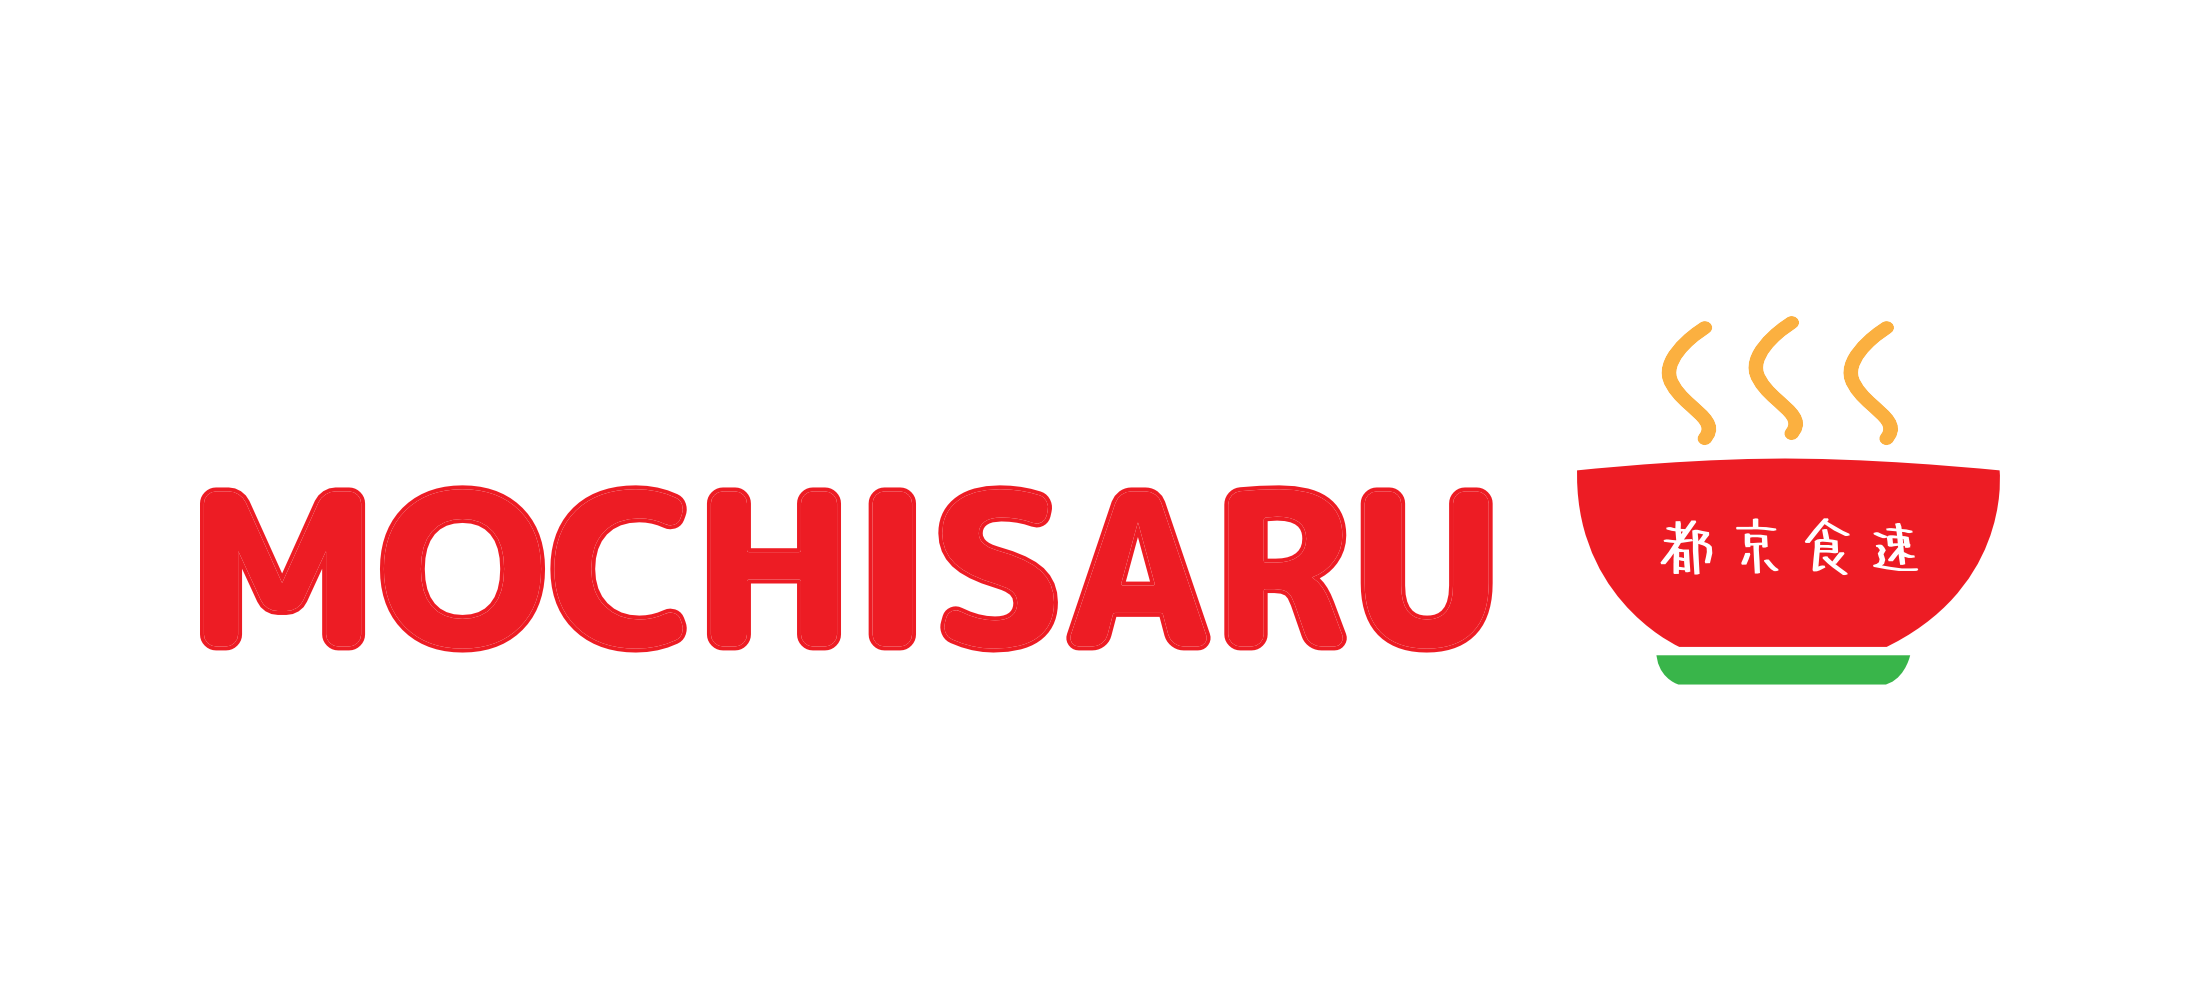 Mochisaru_Logo